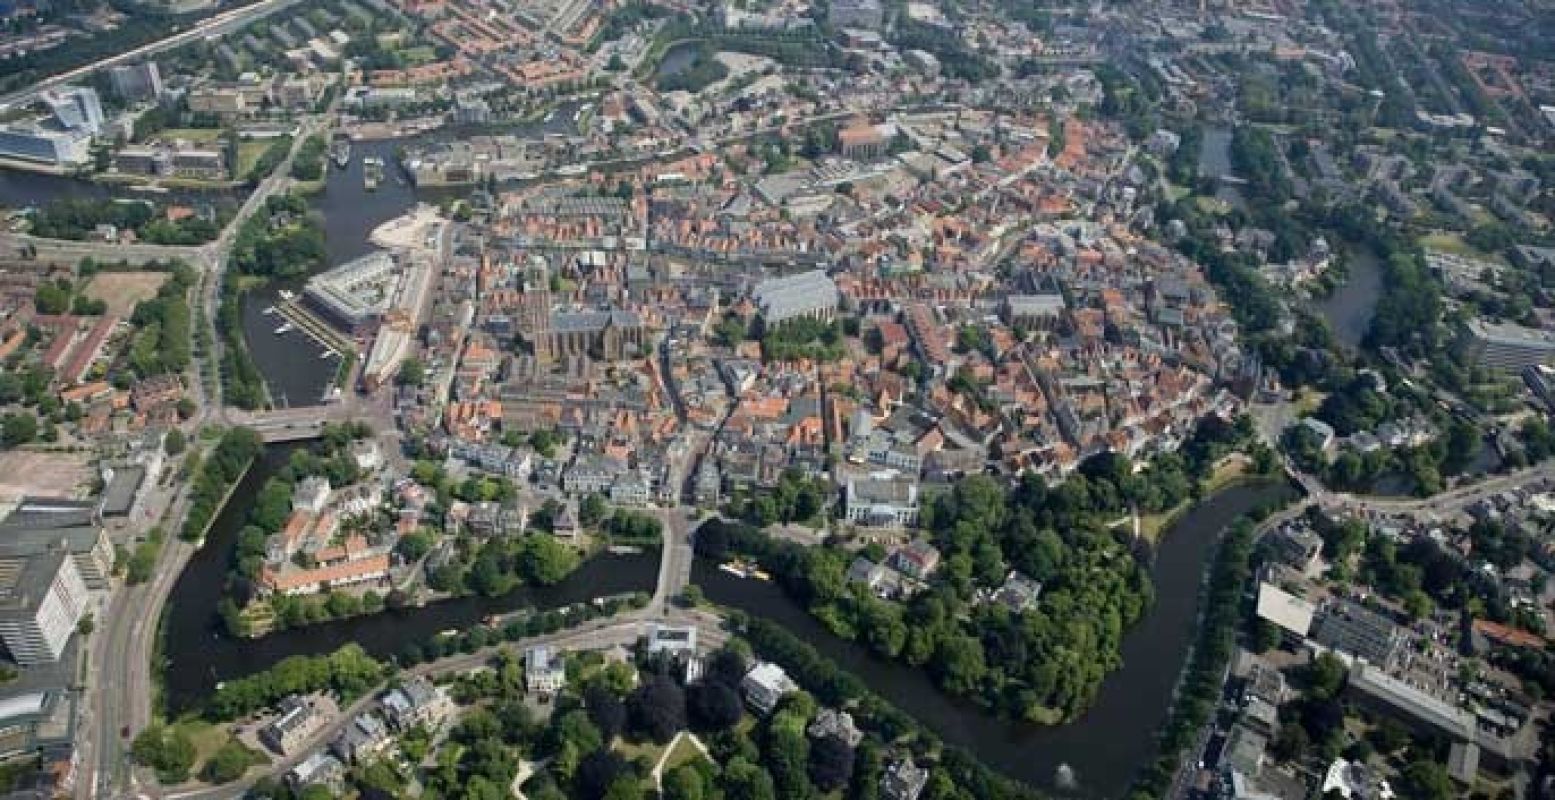 De prachtige binnenstad van Zwolle staat vol leuke spullen. Foto: Citycentrum Zwolle.